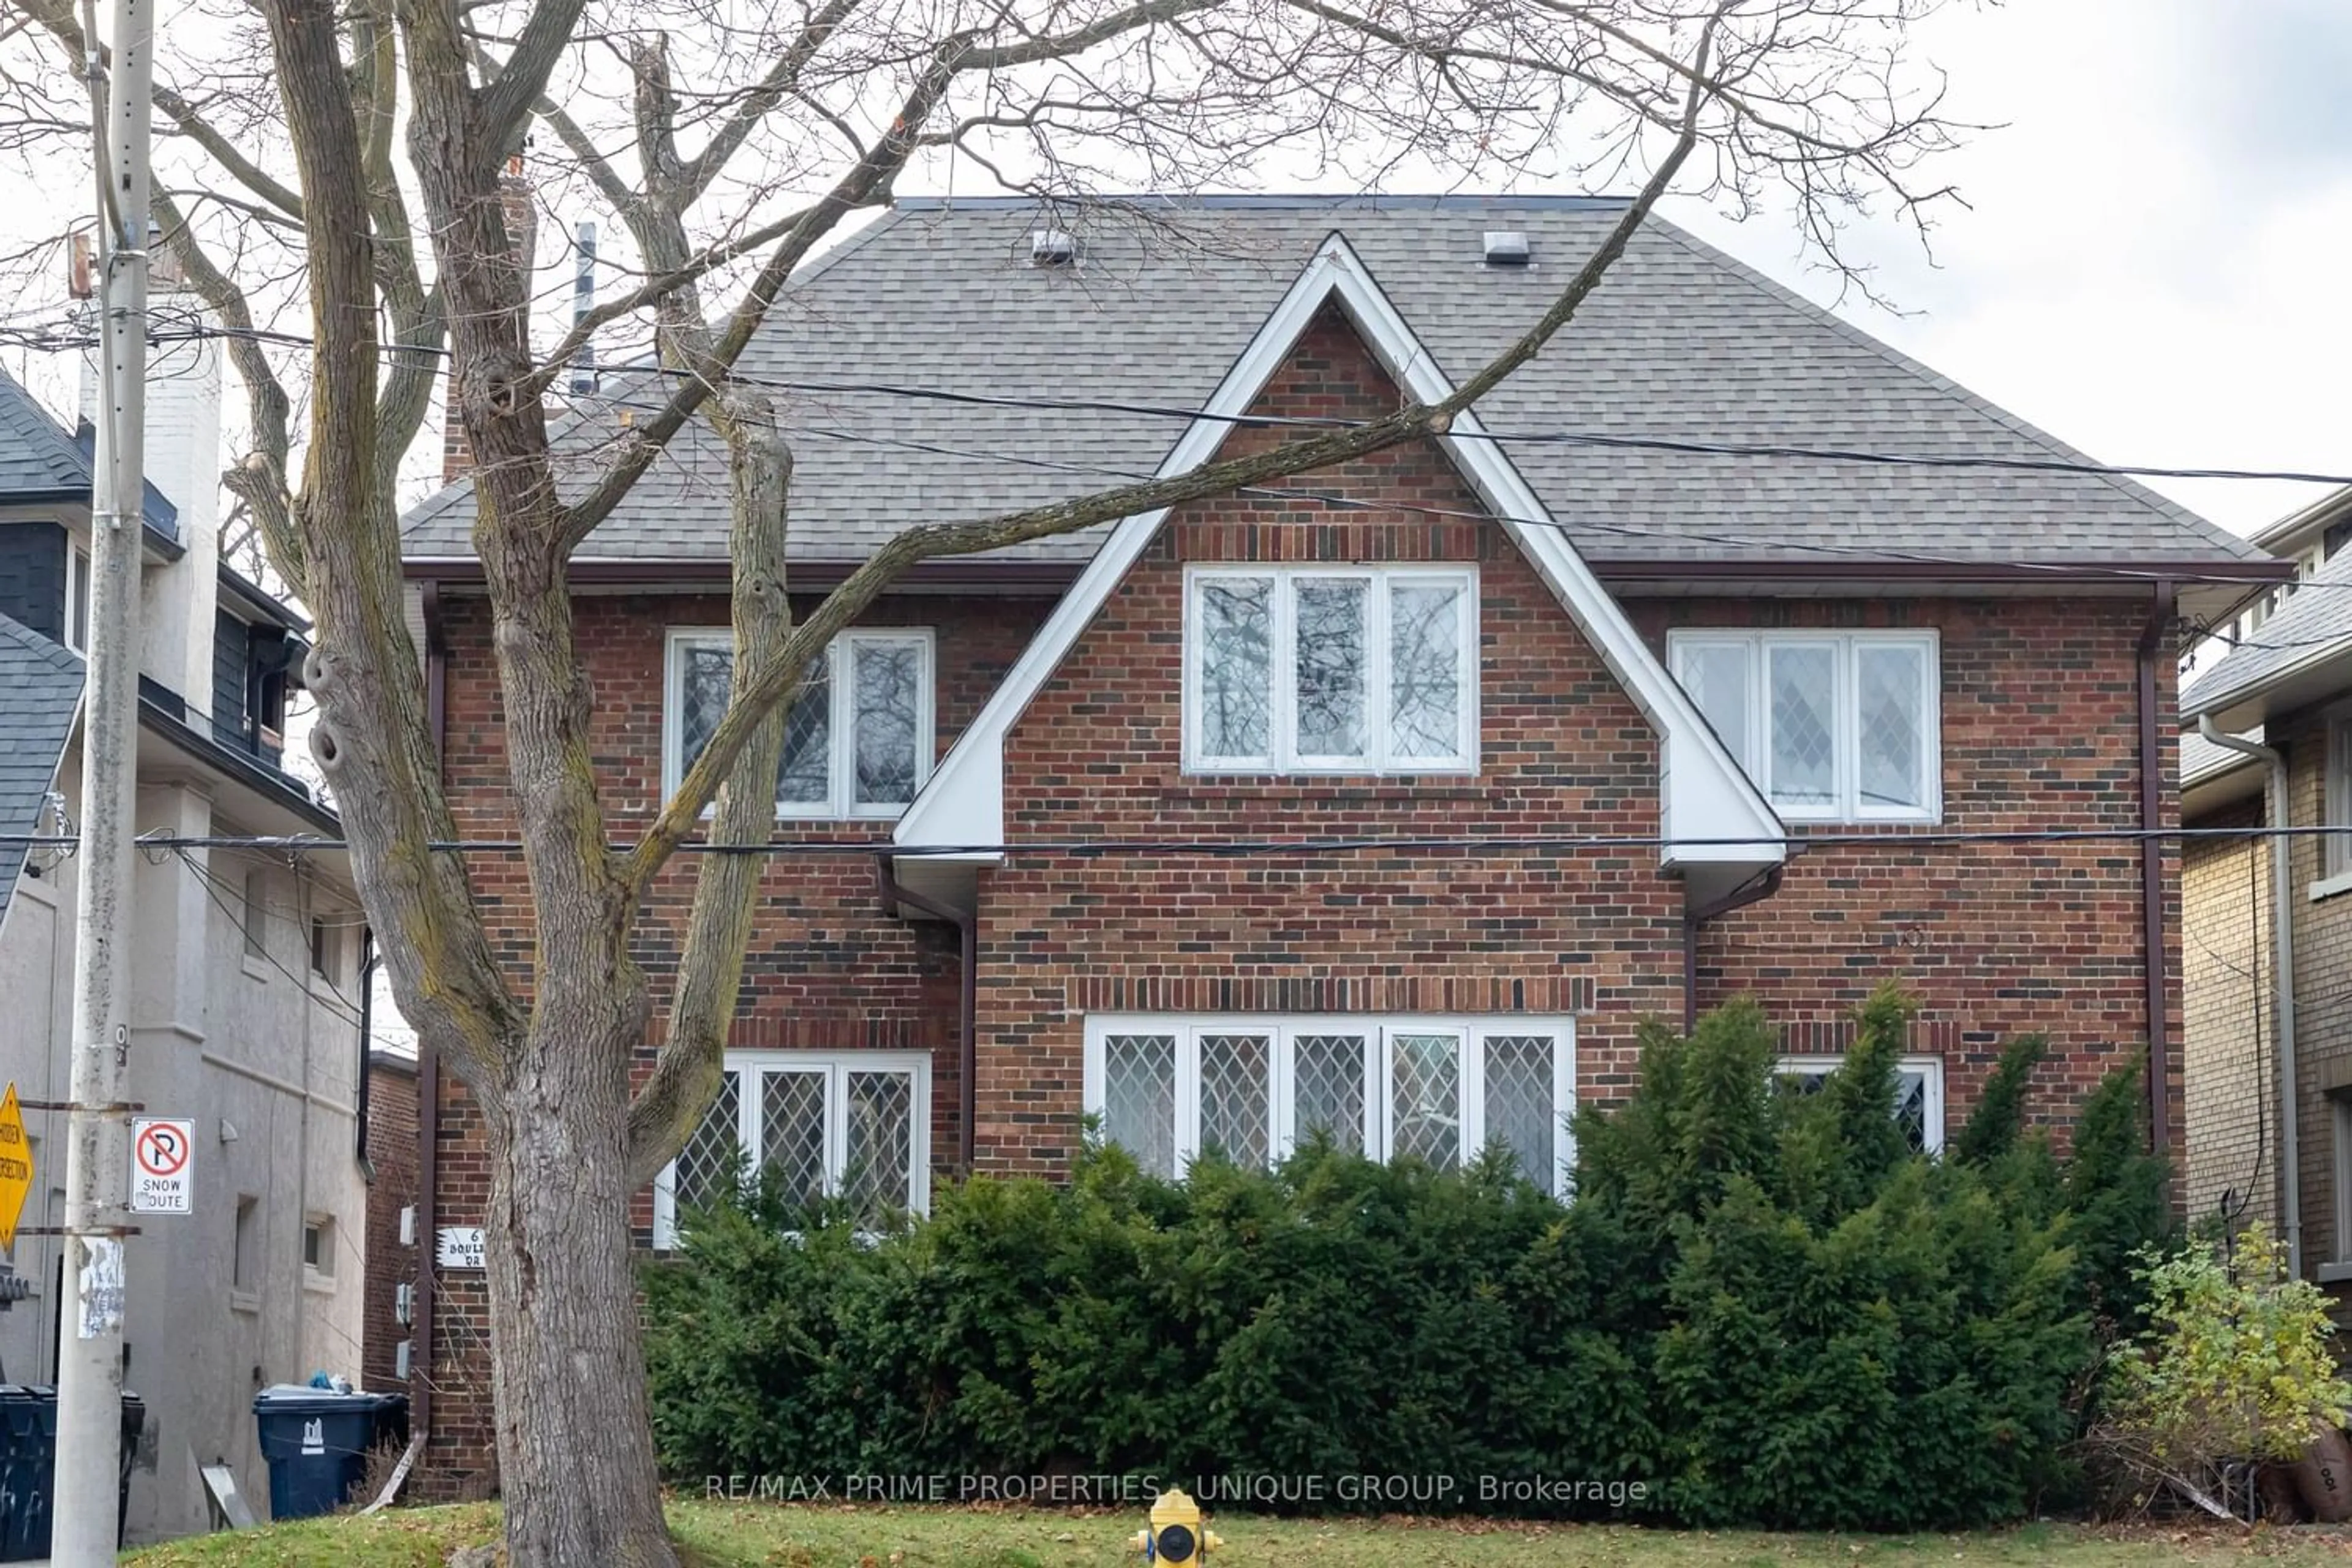 Home with brick exterior material for 6 Boulton Dr, Toronto Ontario M4V 2V4